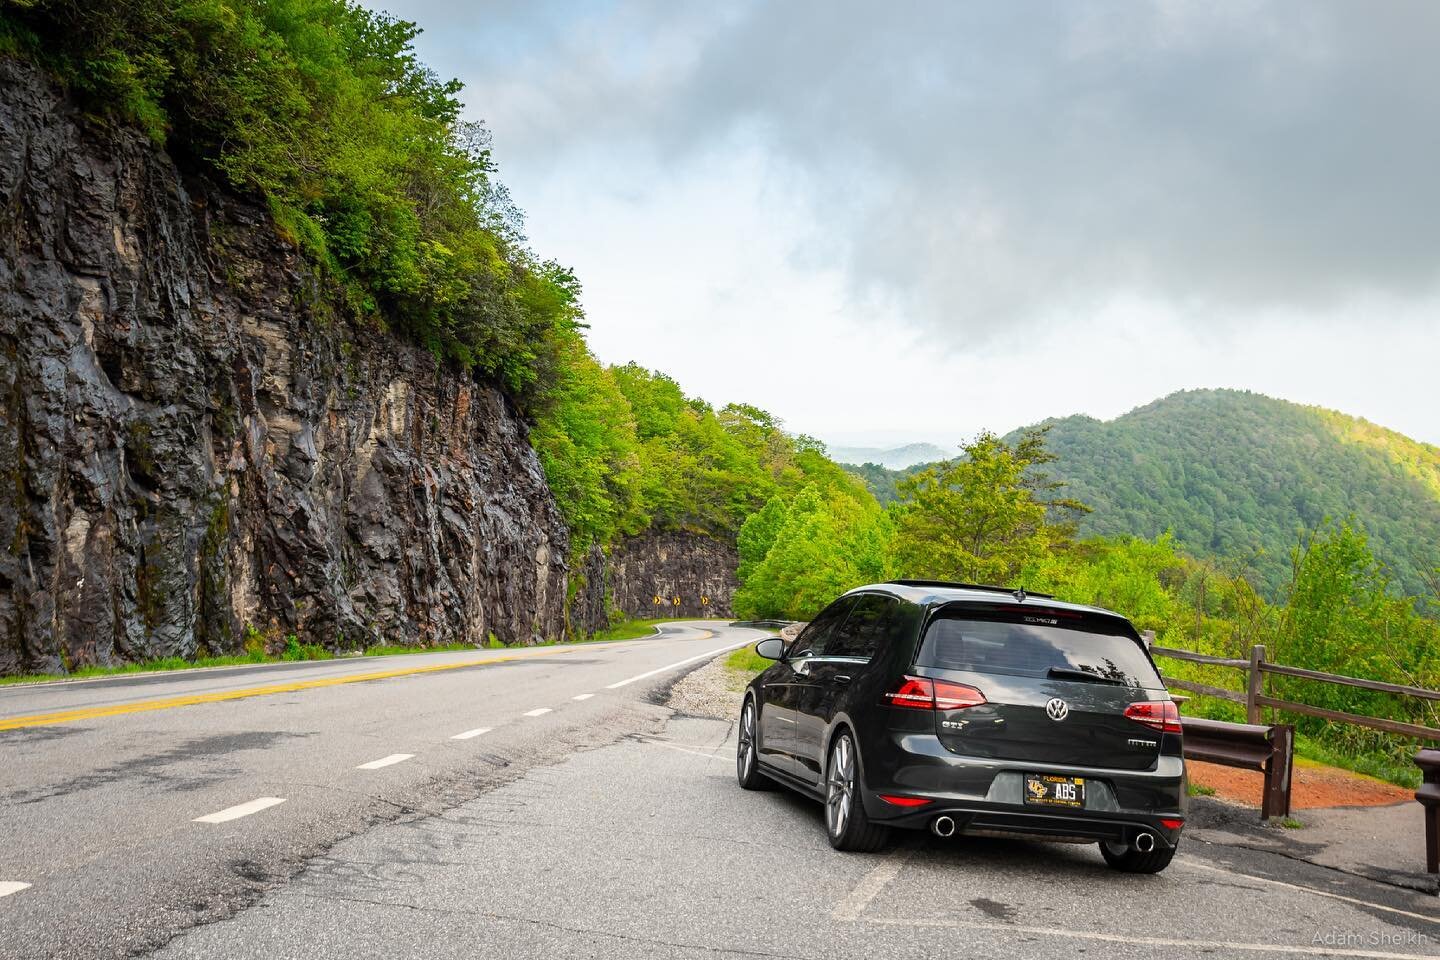 The road ahead. 

#AVF #AlpineVolksFair #AlpineVAGFair #SFLMK7 #GTI #MK7 #MK7GTI #GTIMK7 #VW #Volkswagen